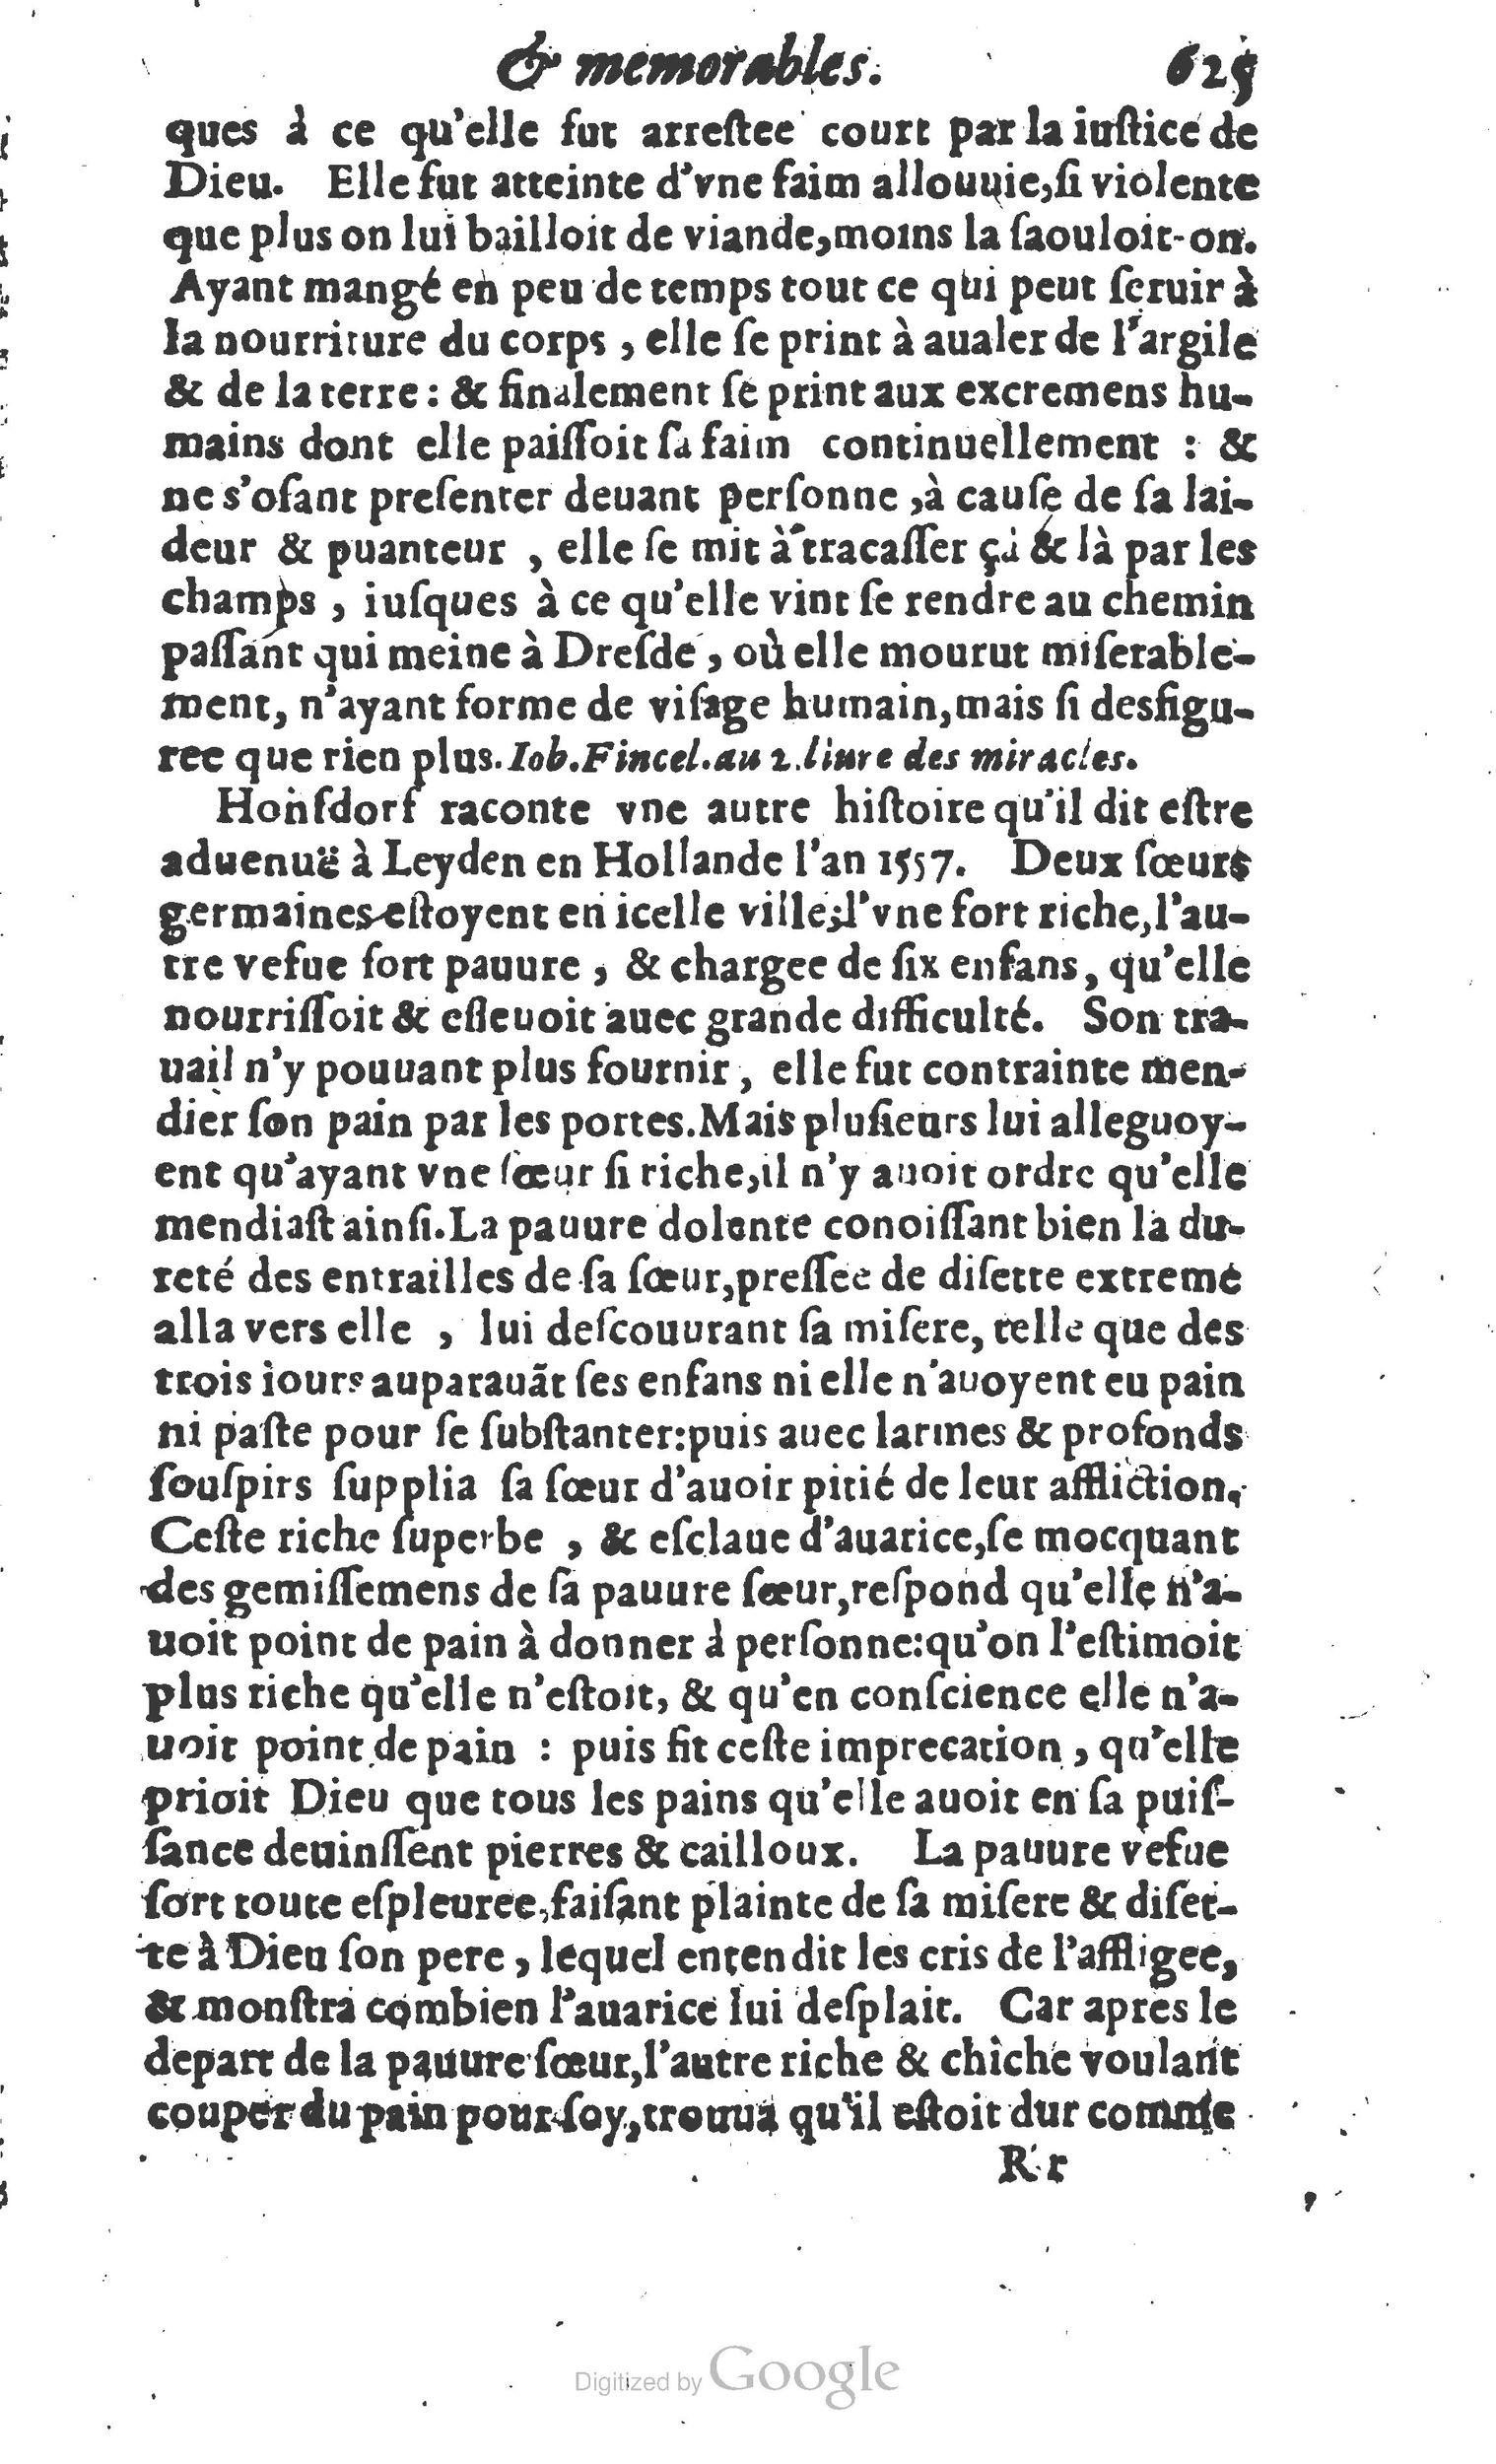 1610 Trésor d’histoires admirables et mémorables de nostre temps Marceau Princeton_Page_0646.jpg